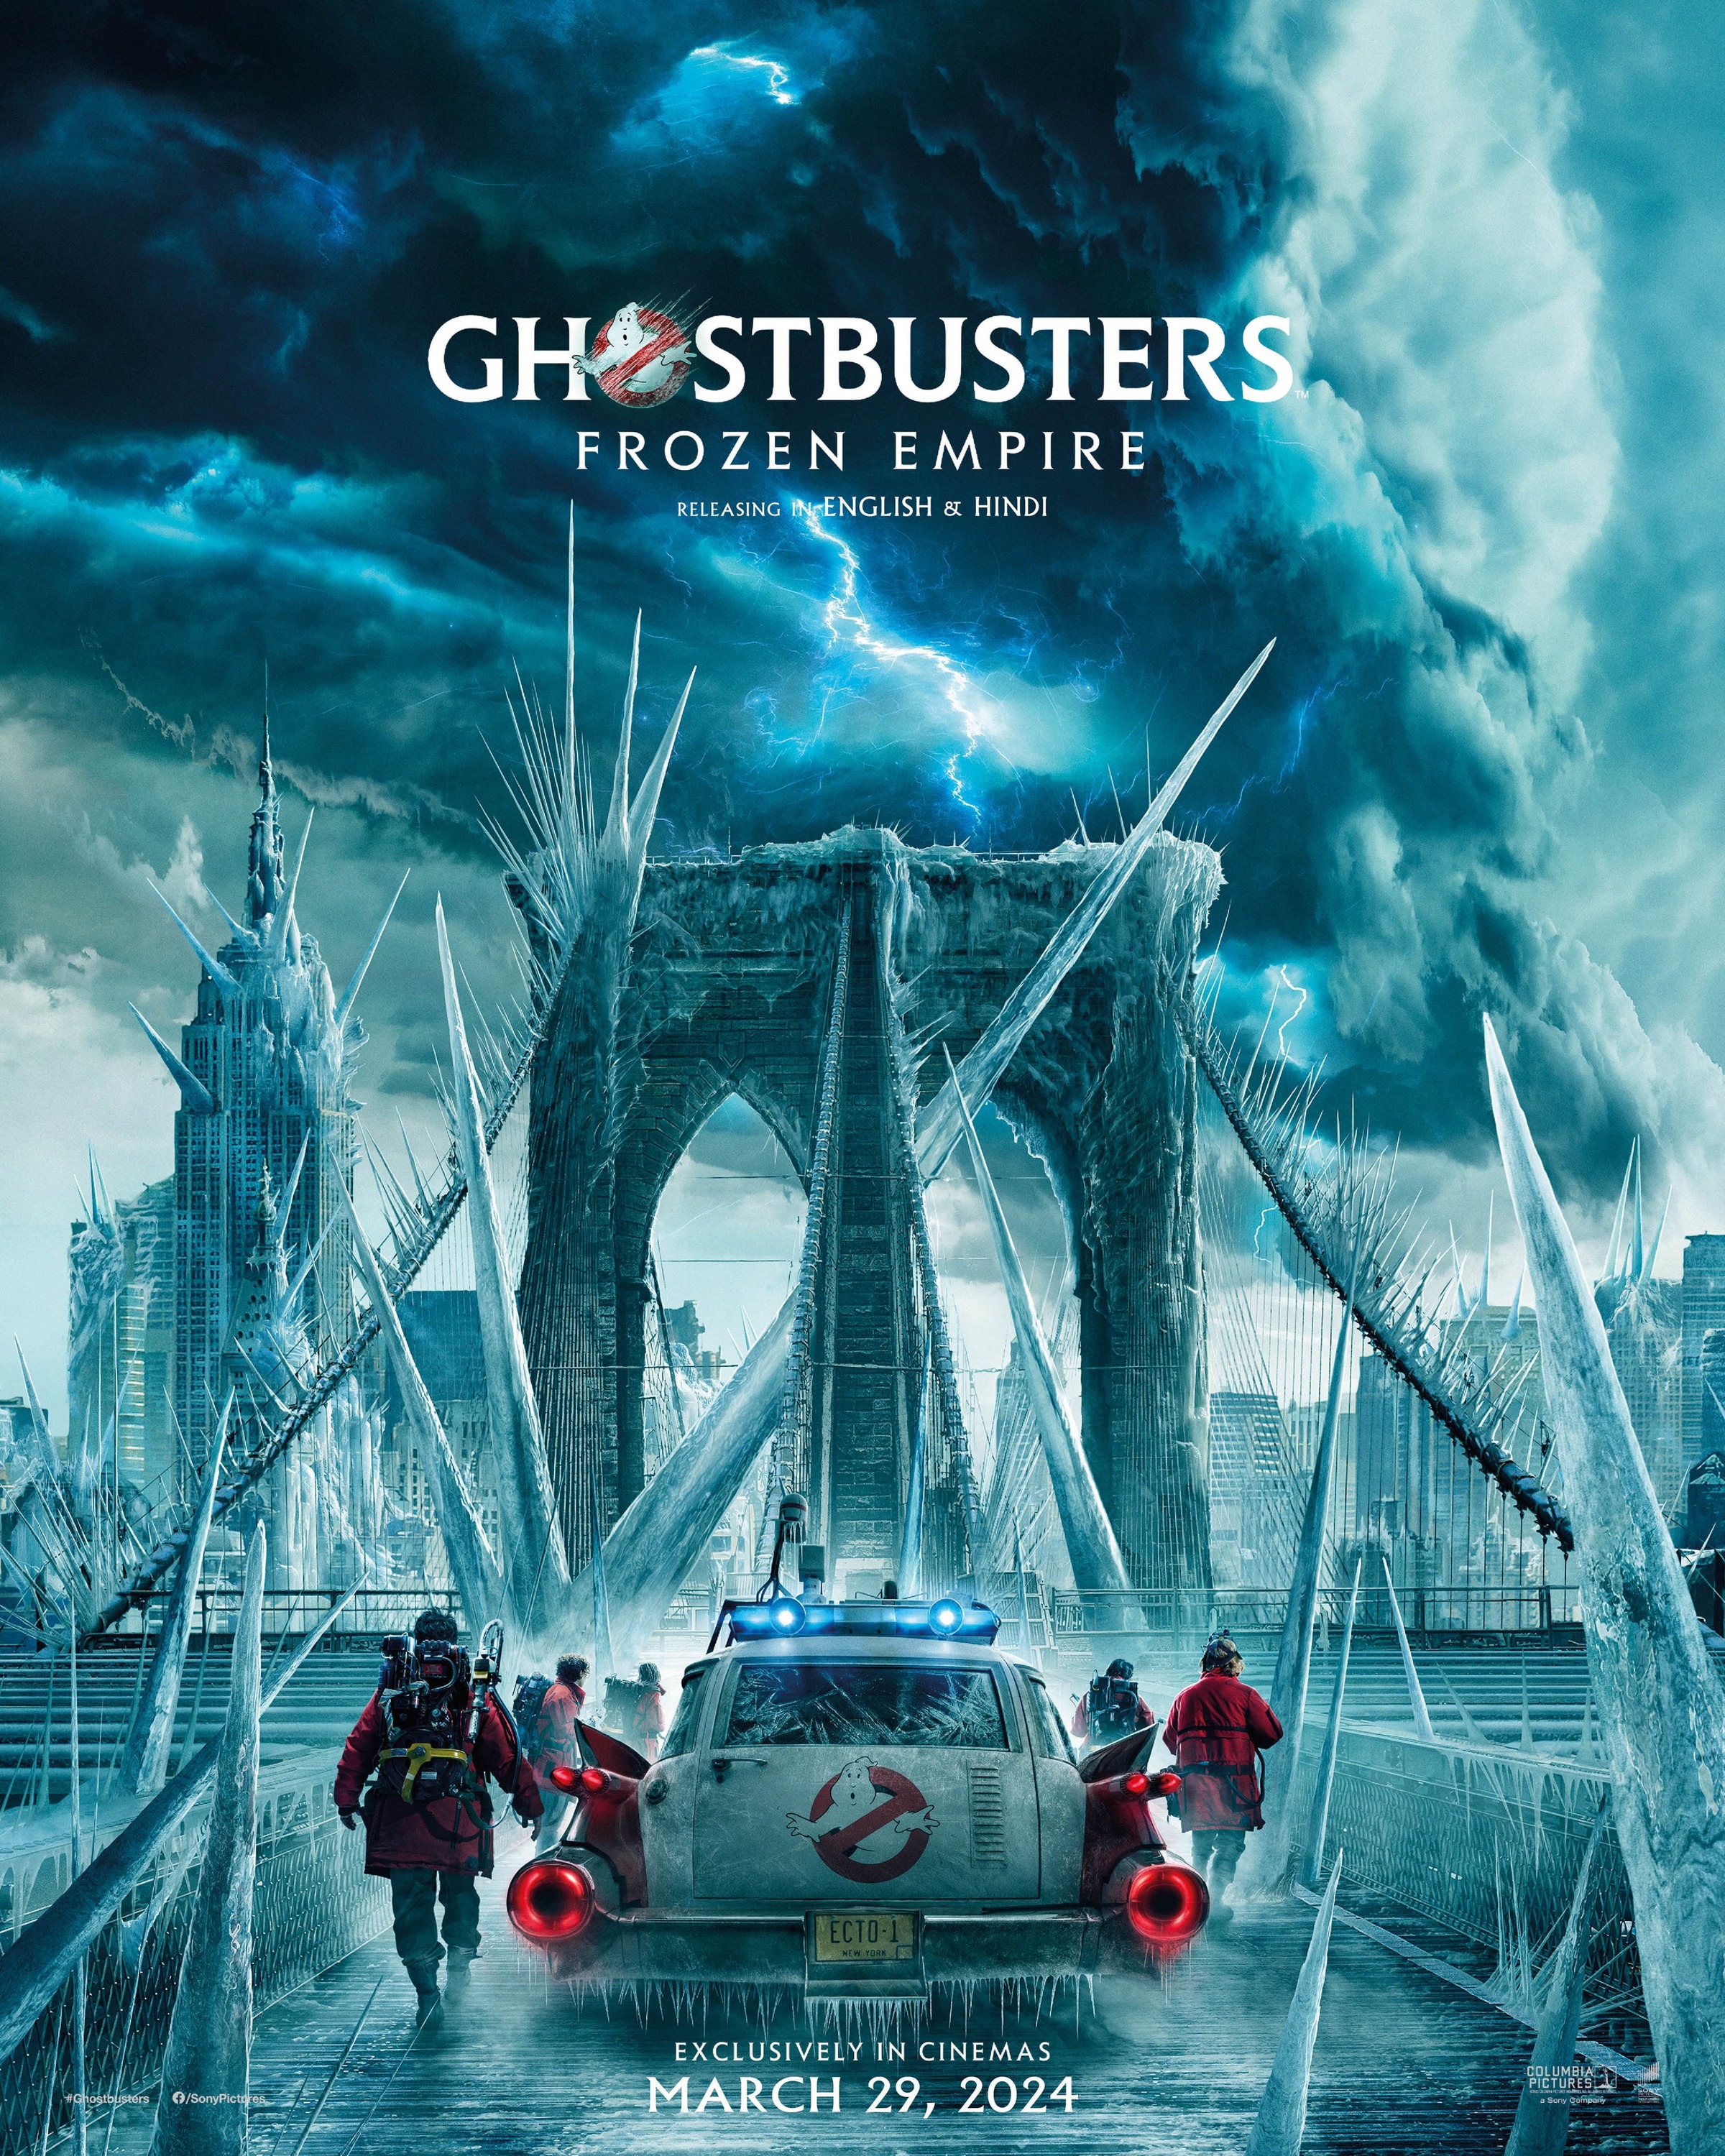 Ghostbusters4Poster03.jpg